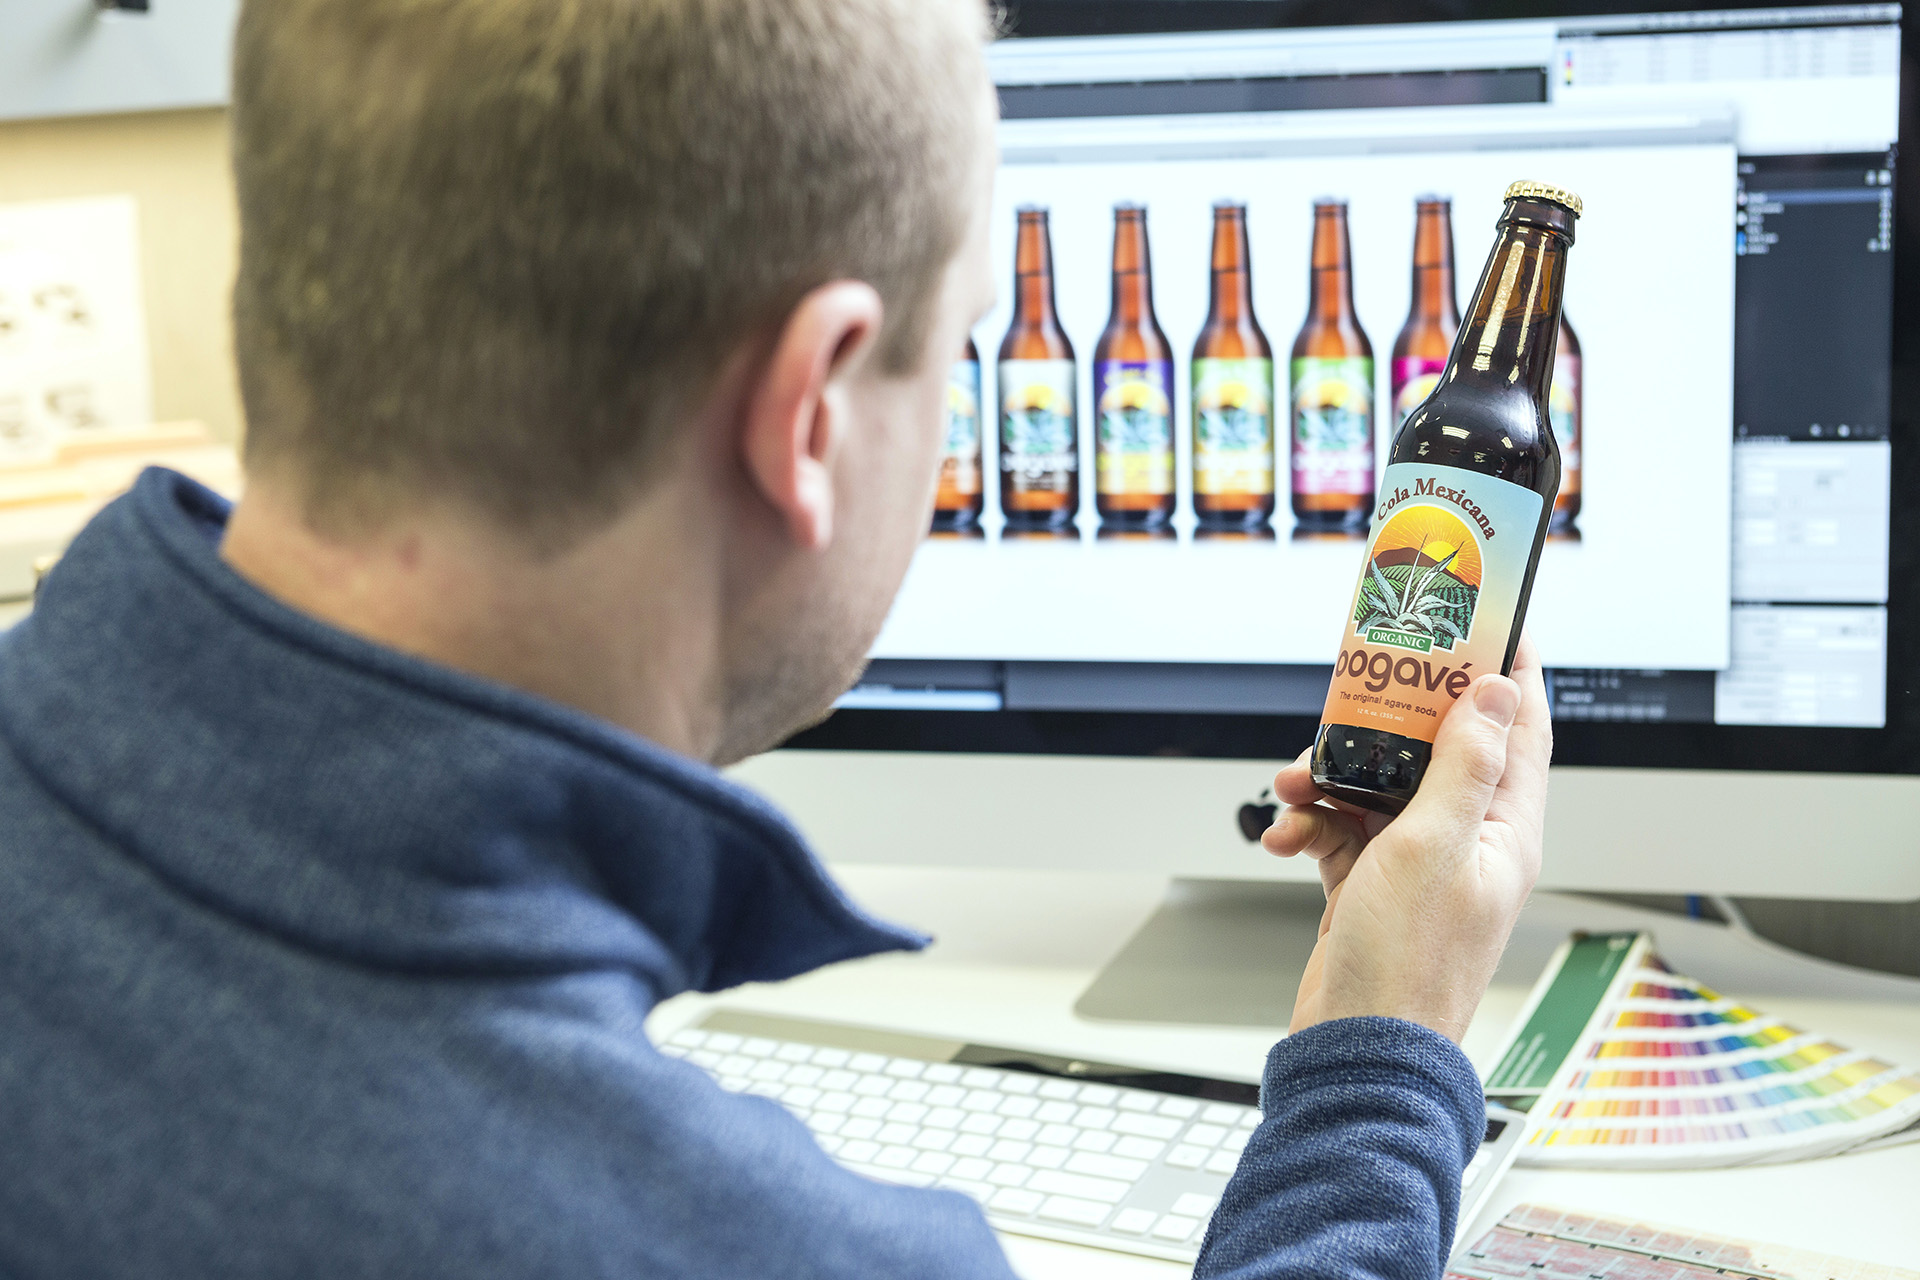 Prepress team member with pressure sensitive label on craft beer bottle